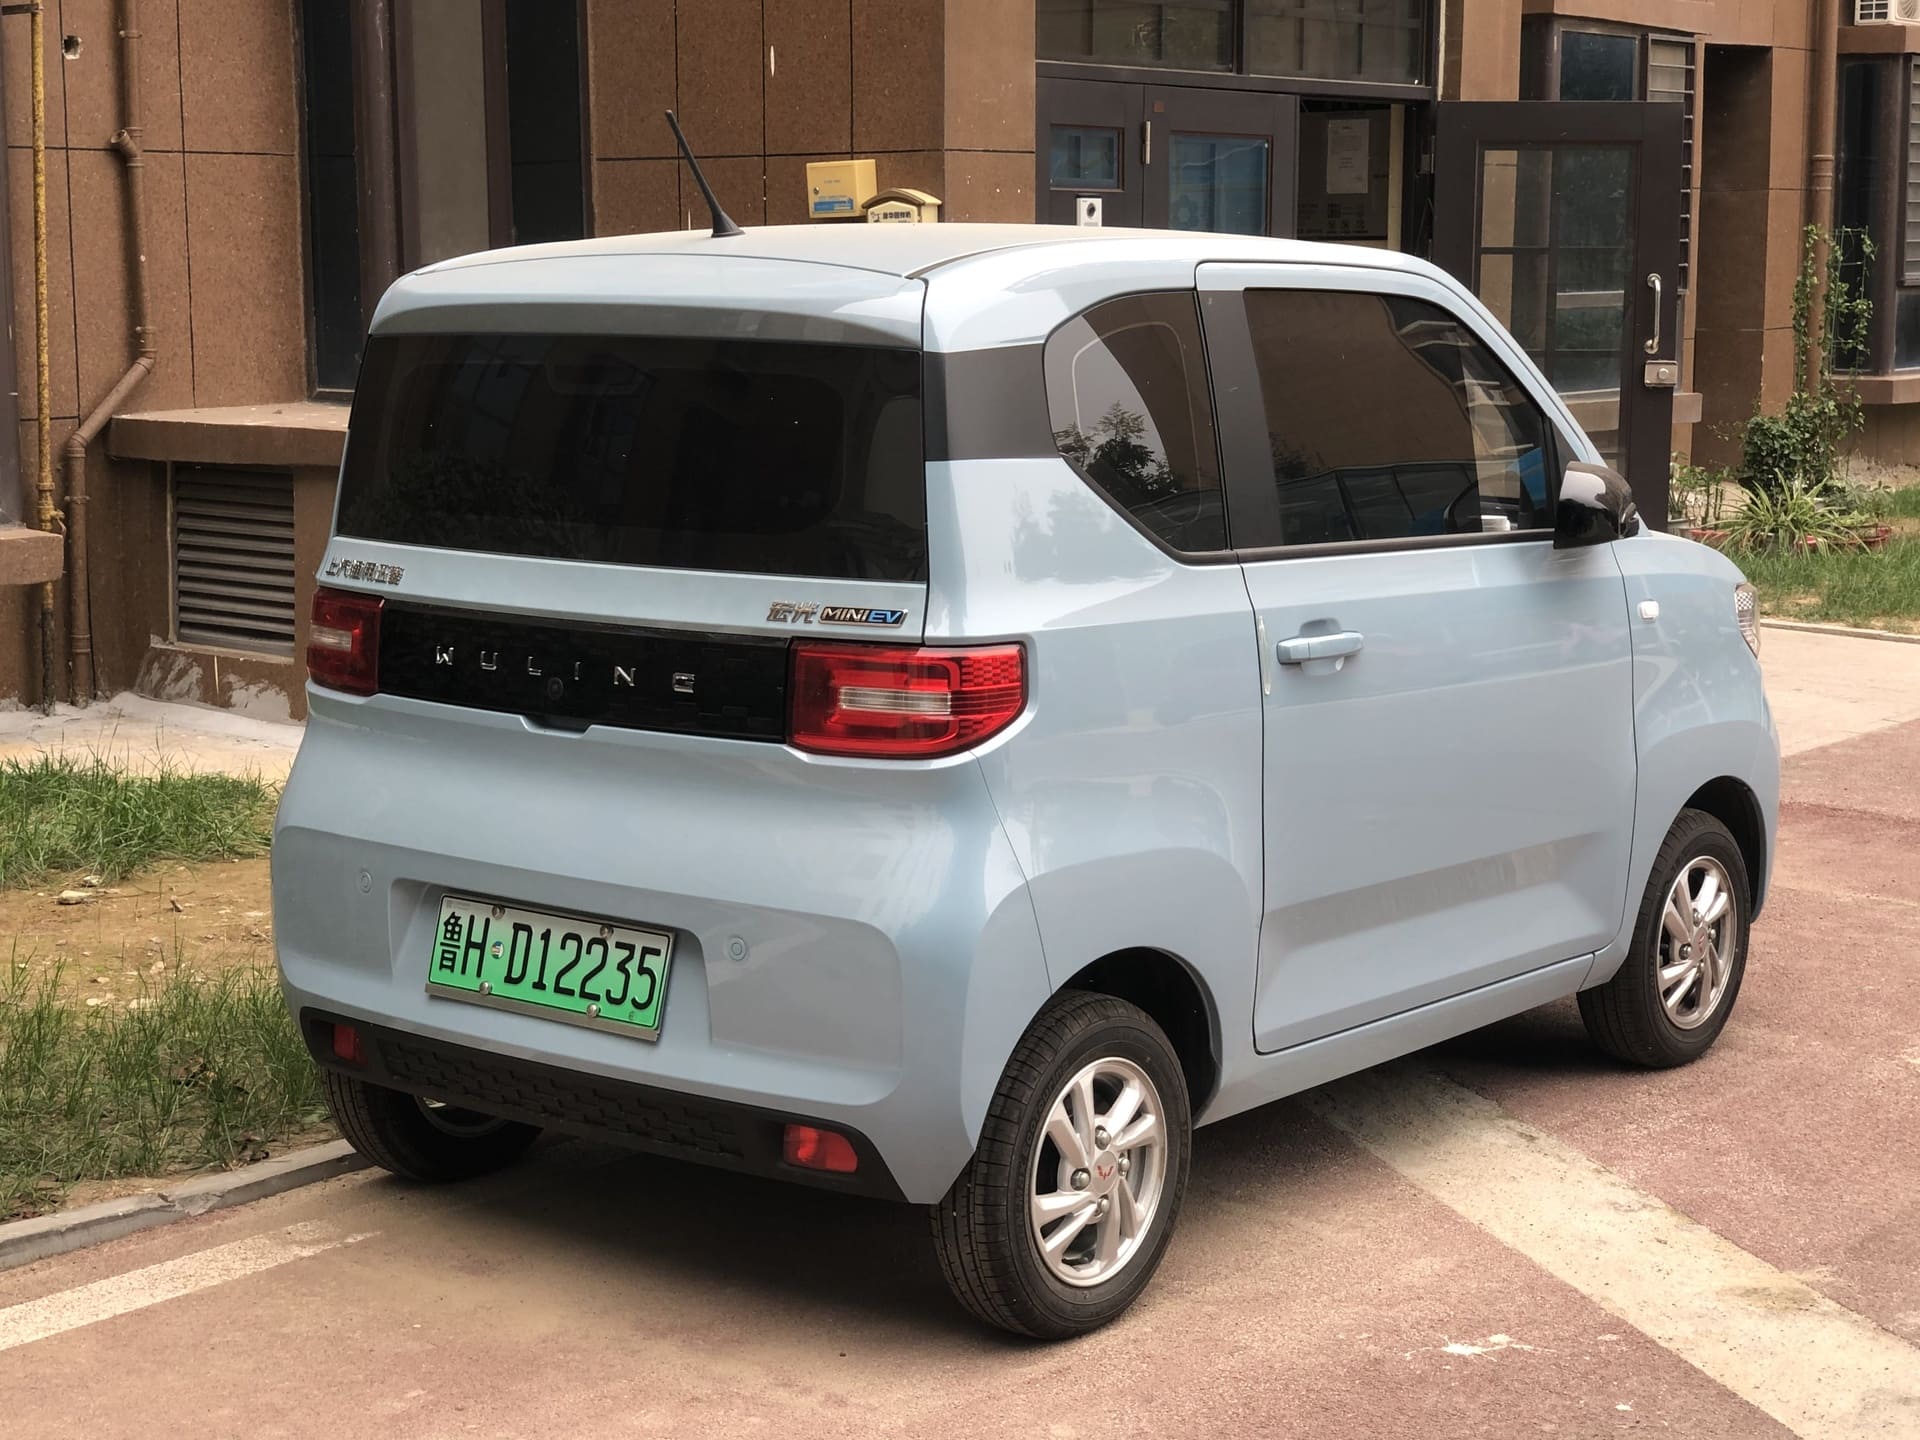 4 mẫu xe ô tô điện cho chị em, chiếc cuối cùng bán tại Việt Nam với tiền cọc chỉ 10 triệu đồng - Ảnh 6.